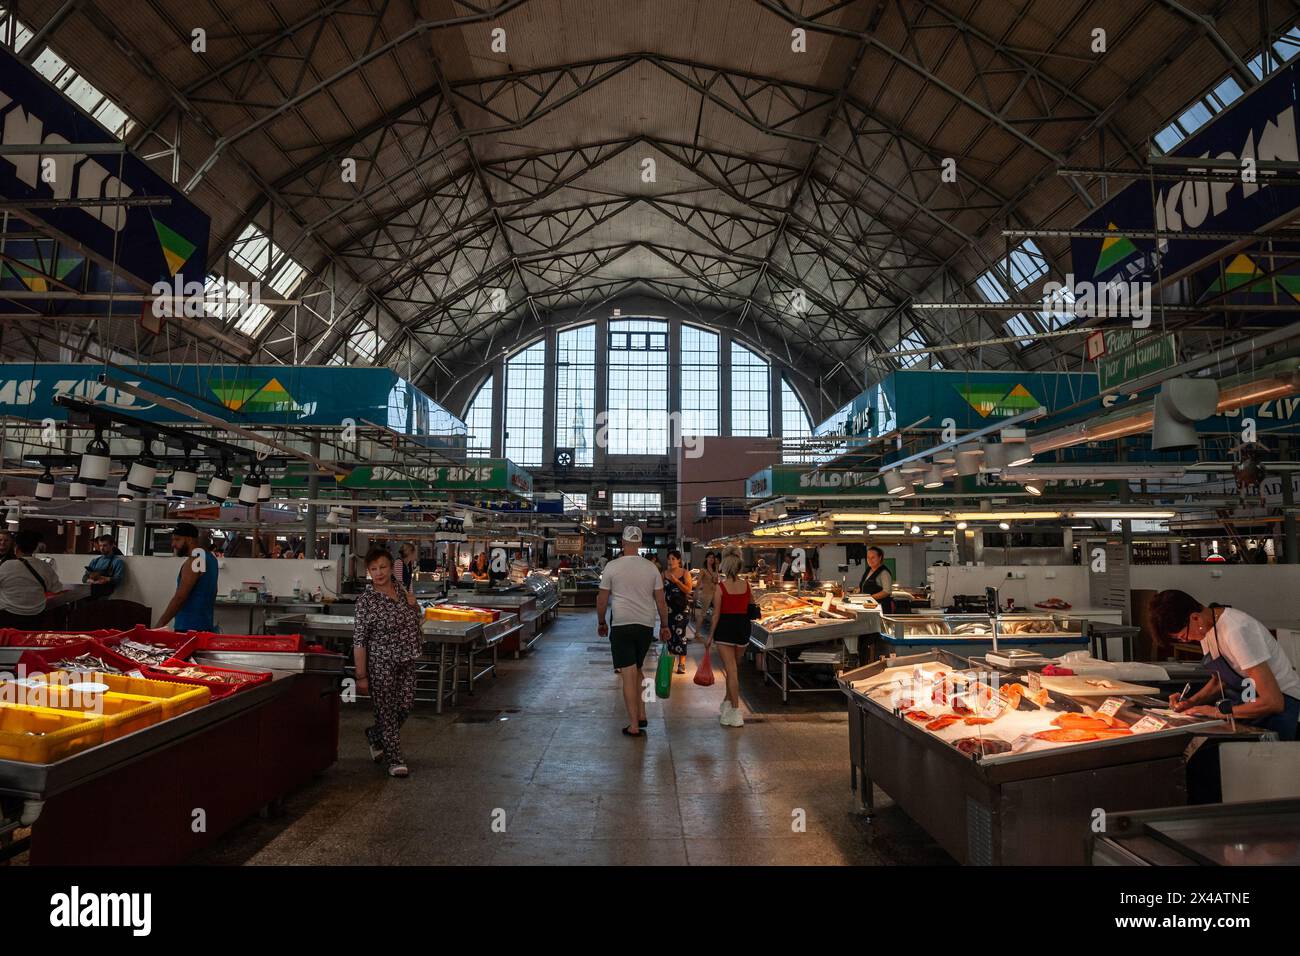 Immagine della navata principale del padiglione del pesce del mercato centrale di riga. Il mercato centrale di riga è il più grande mercato e bazar d'Europa a riga, in Lettonia. Foto Stock